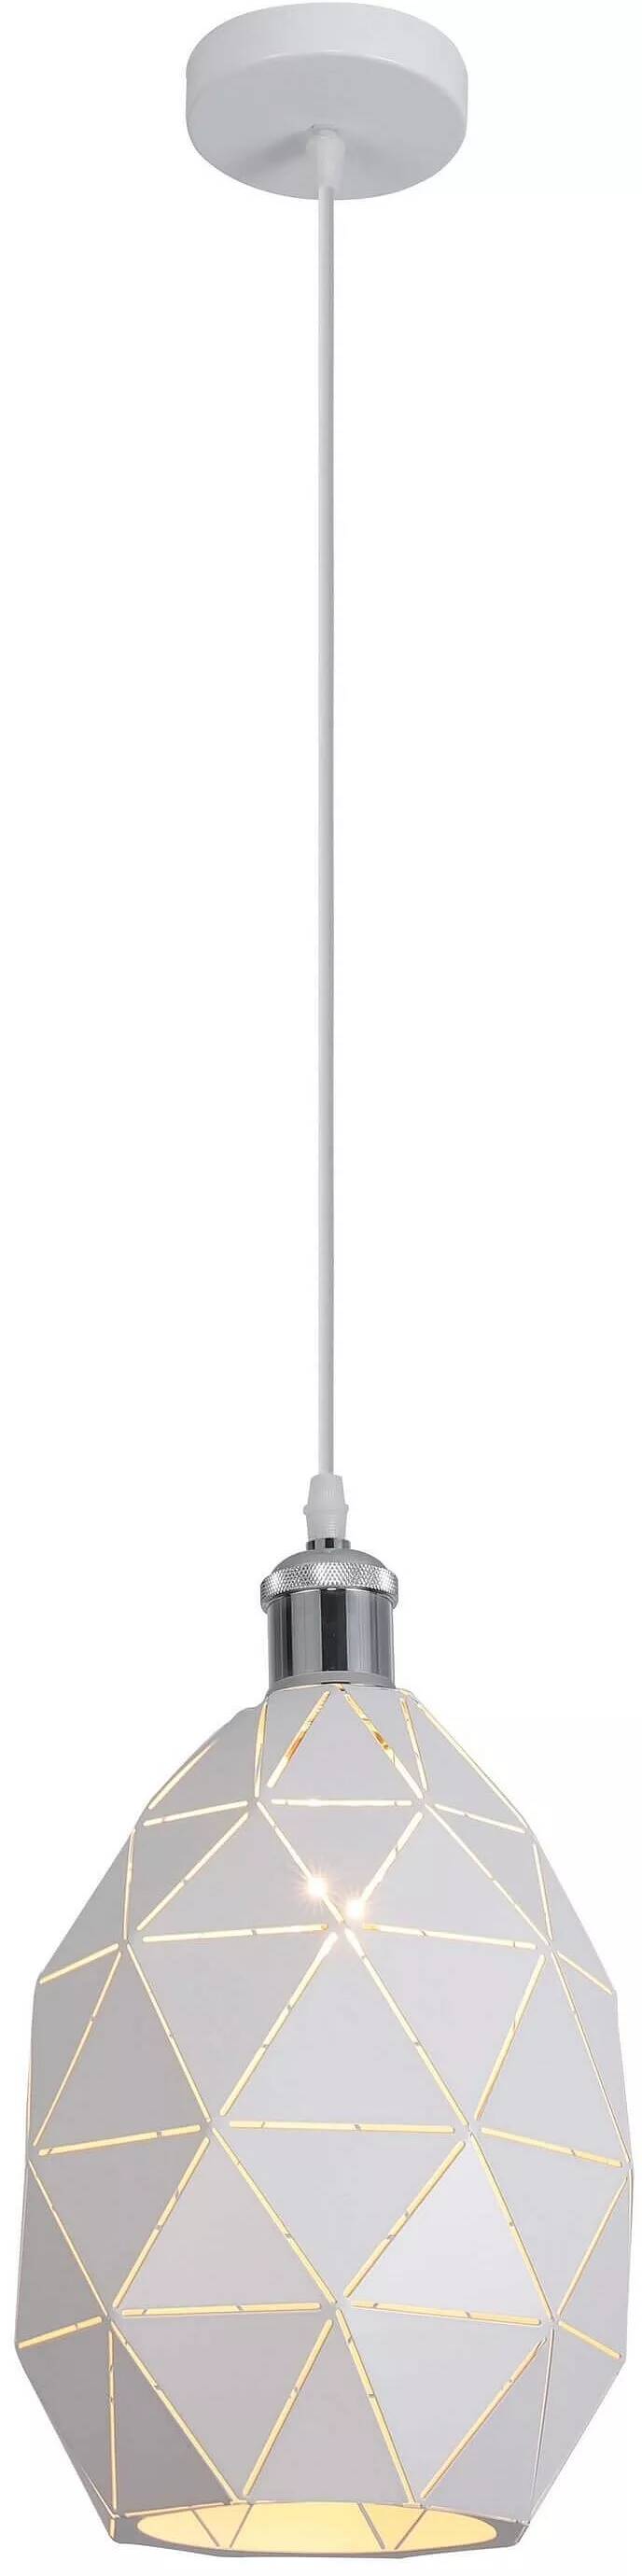 Lampe suspension en métal blanc Ø22